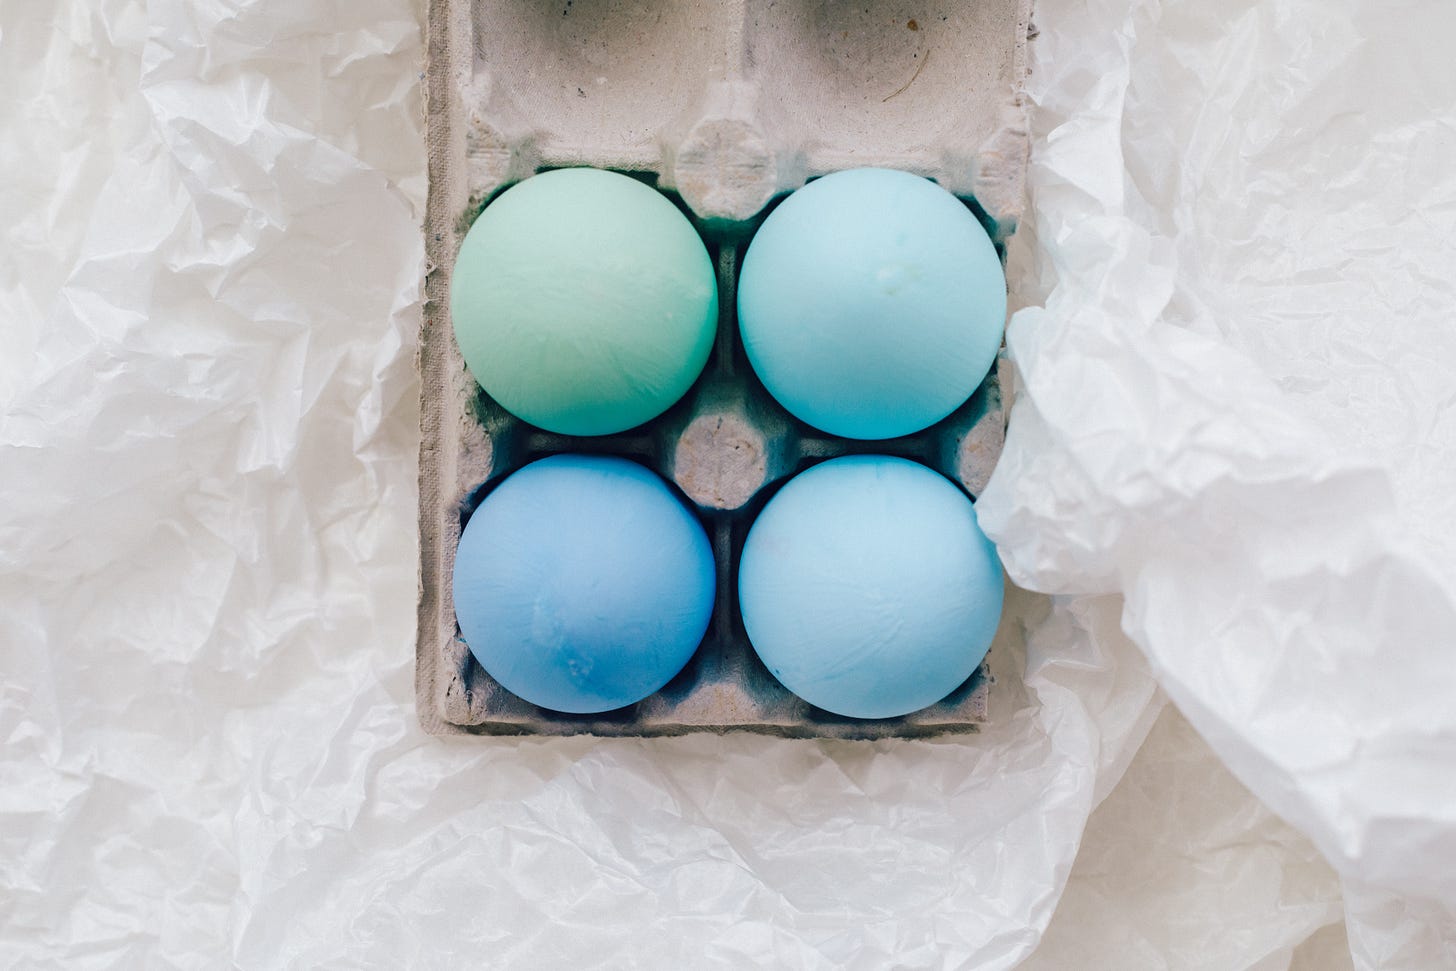 A carton of blue chicken eggs.